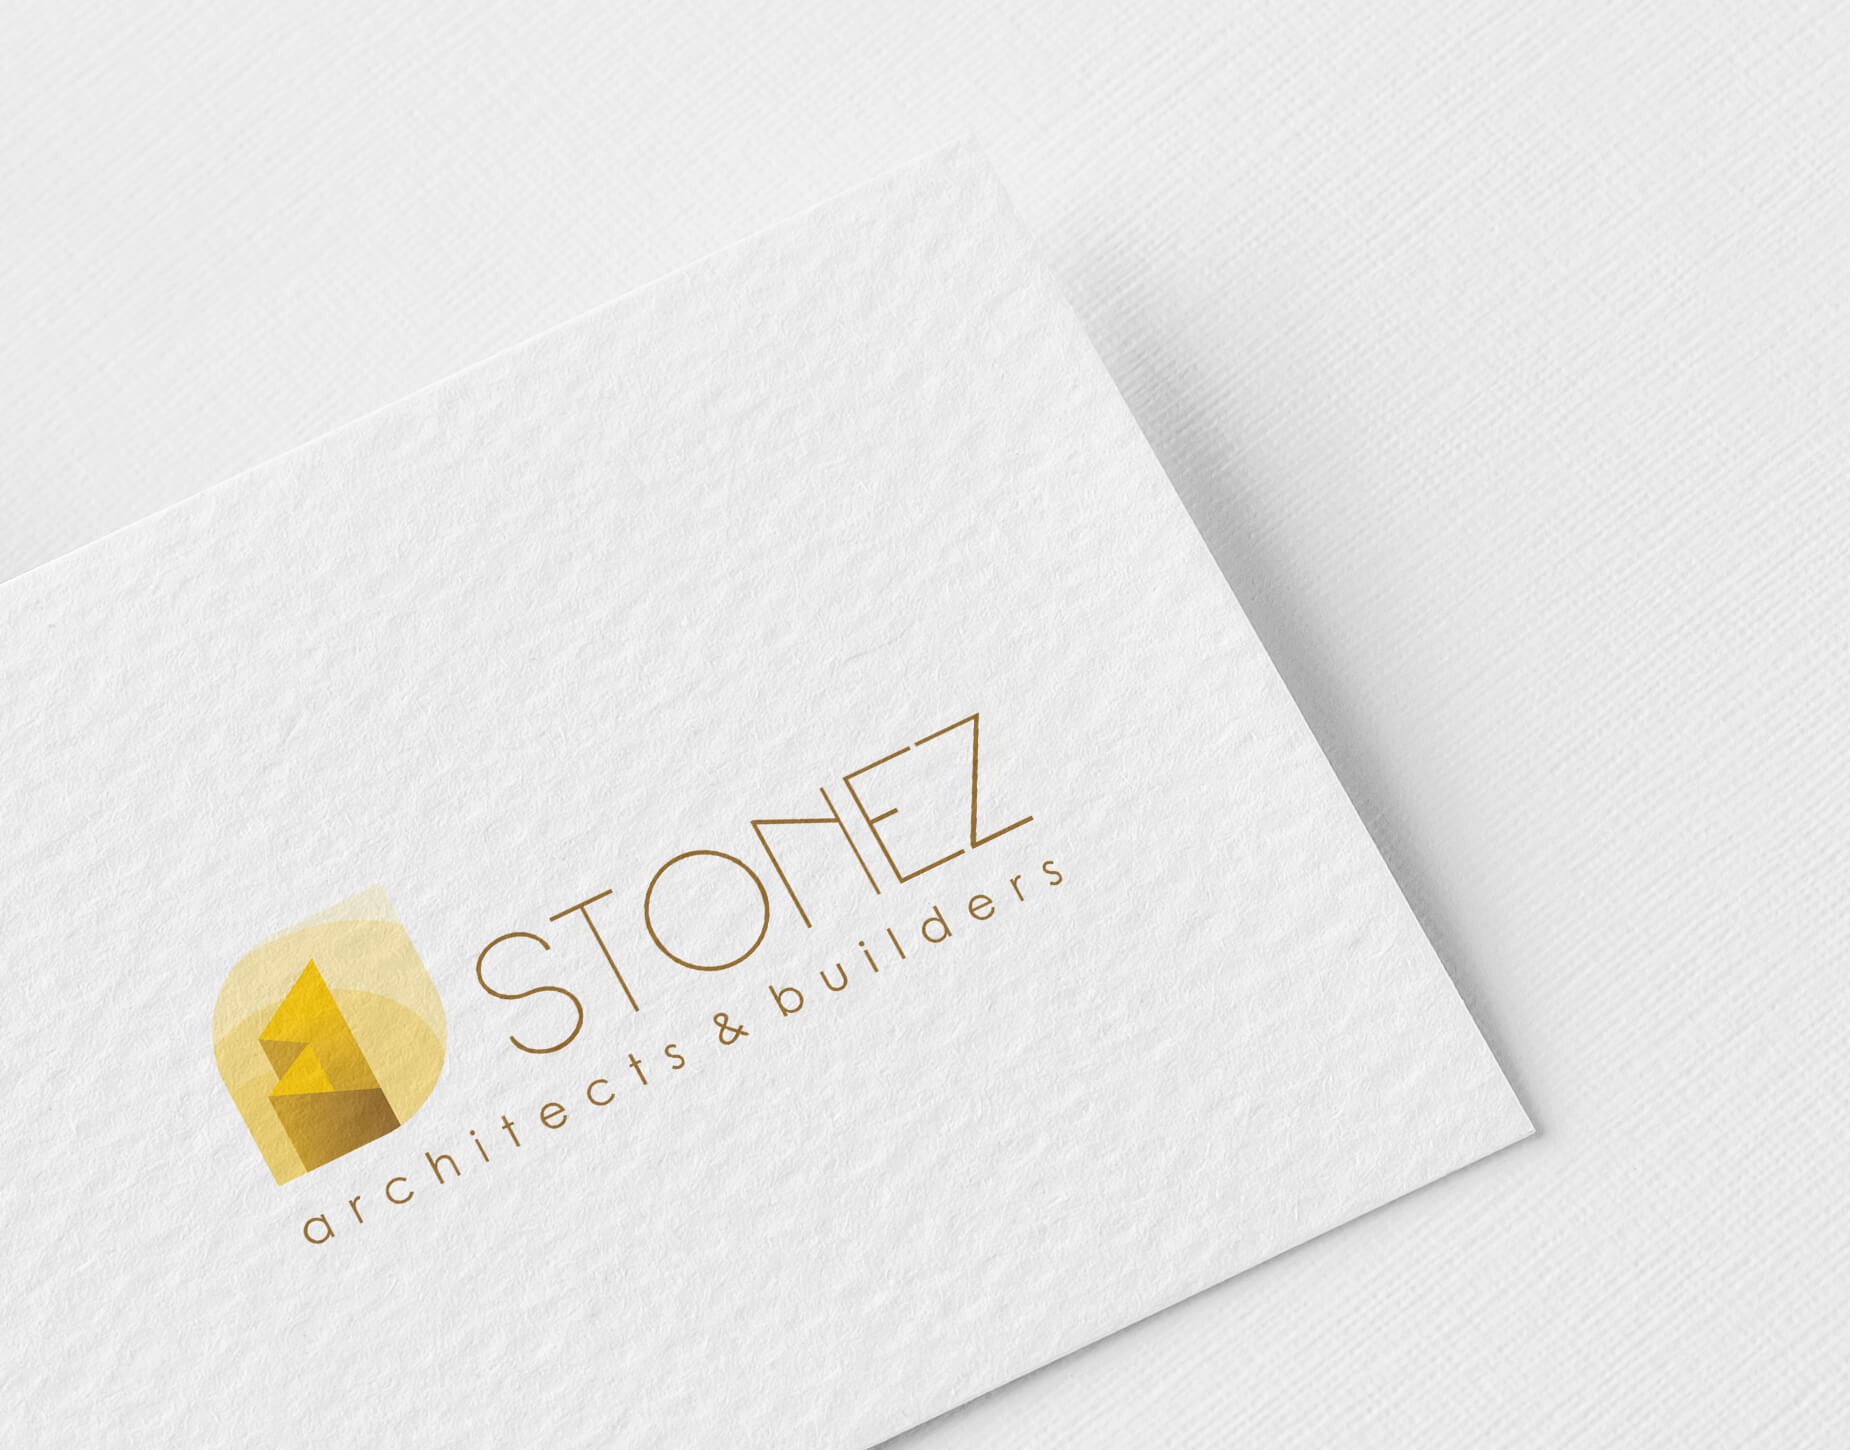 Stonez Architects